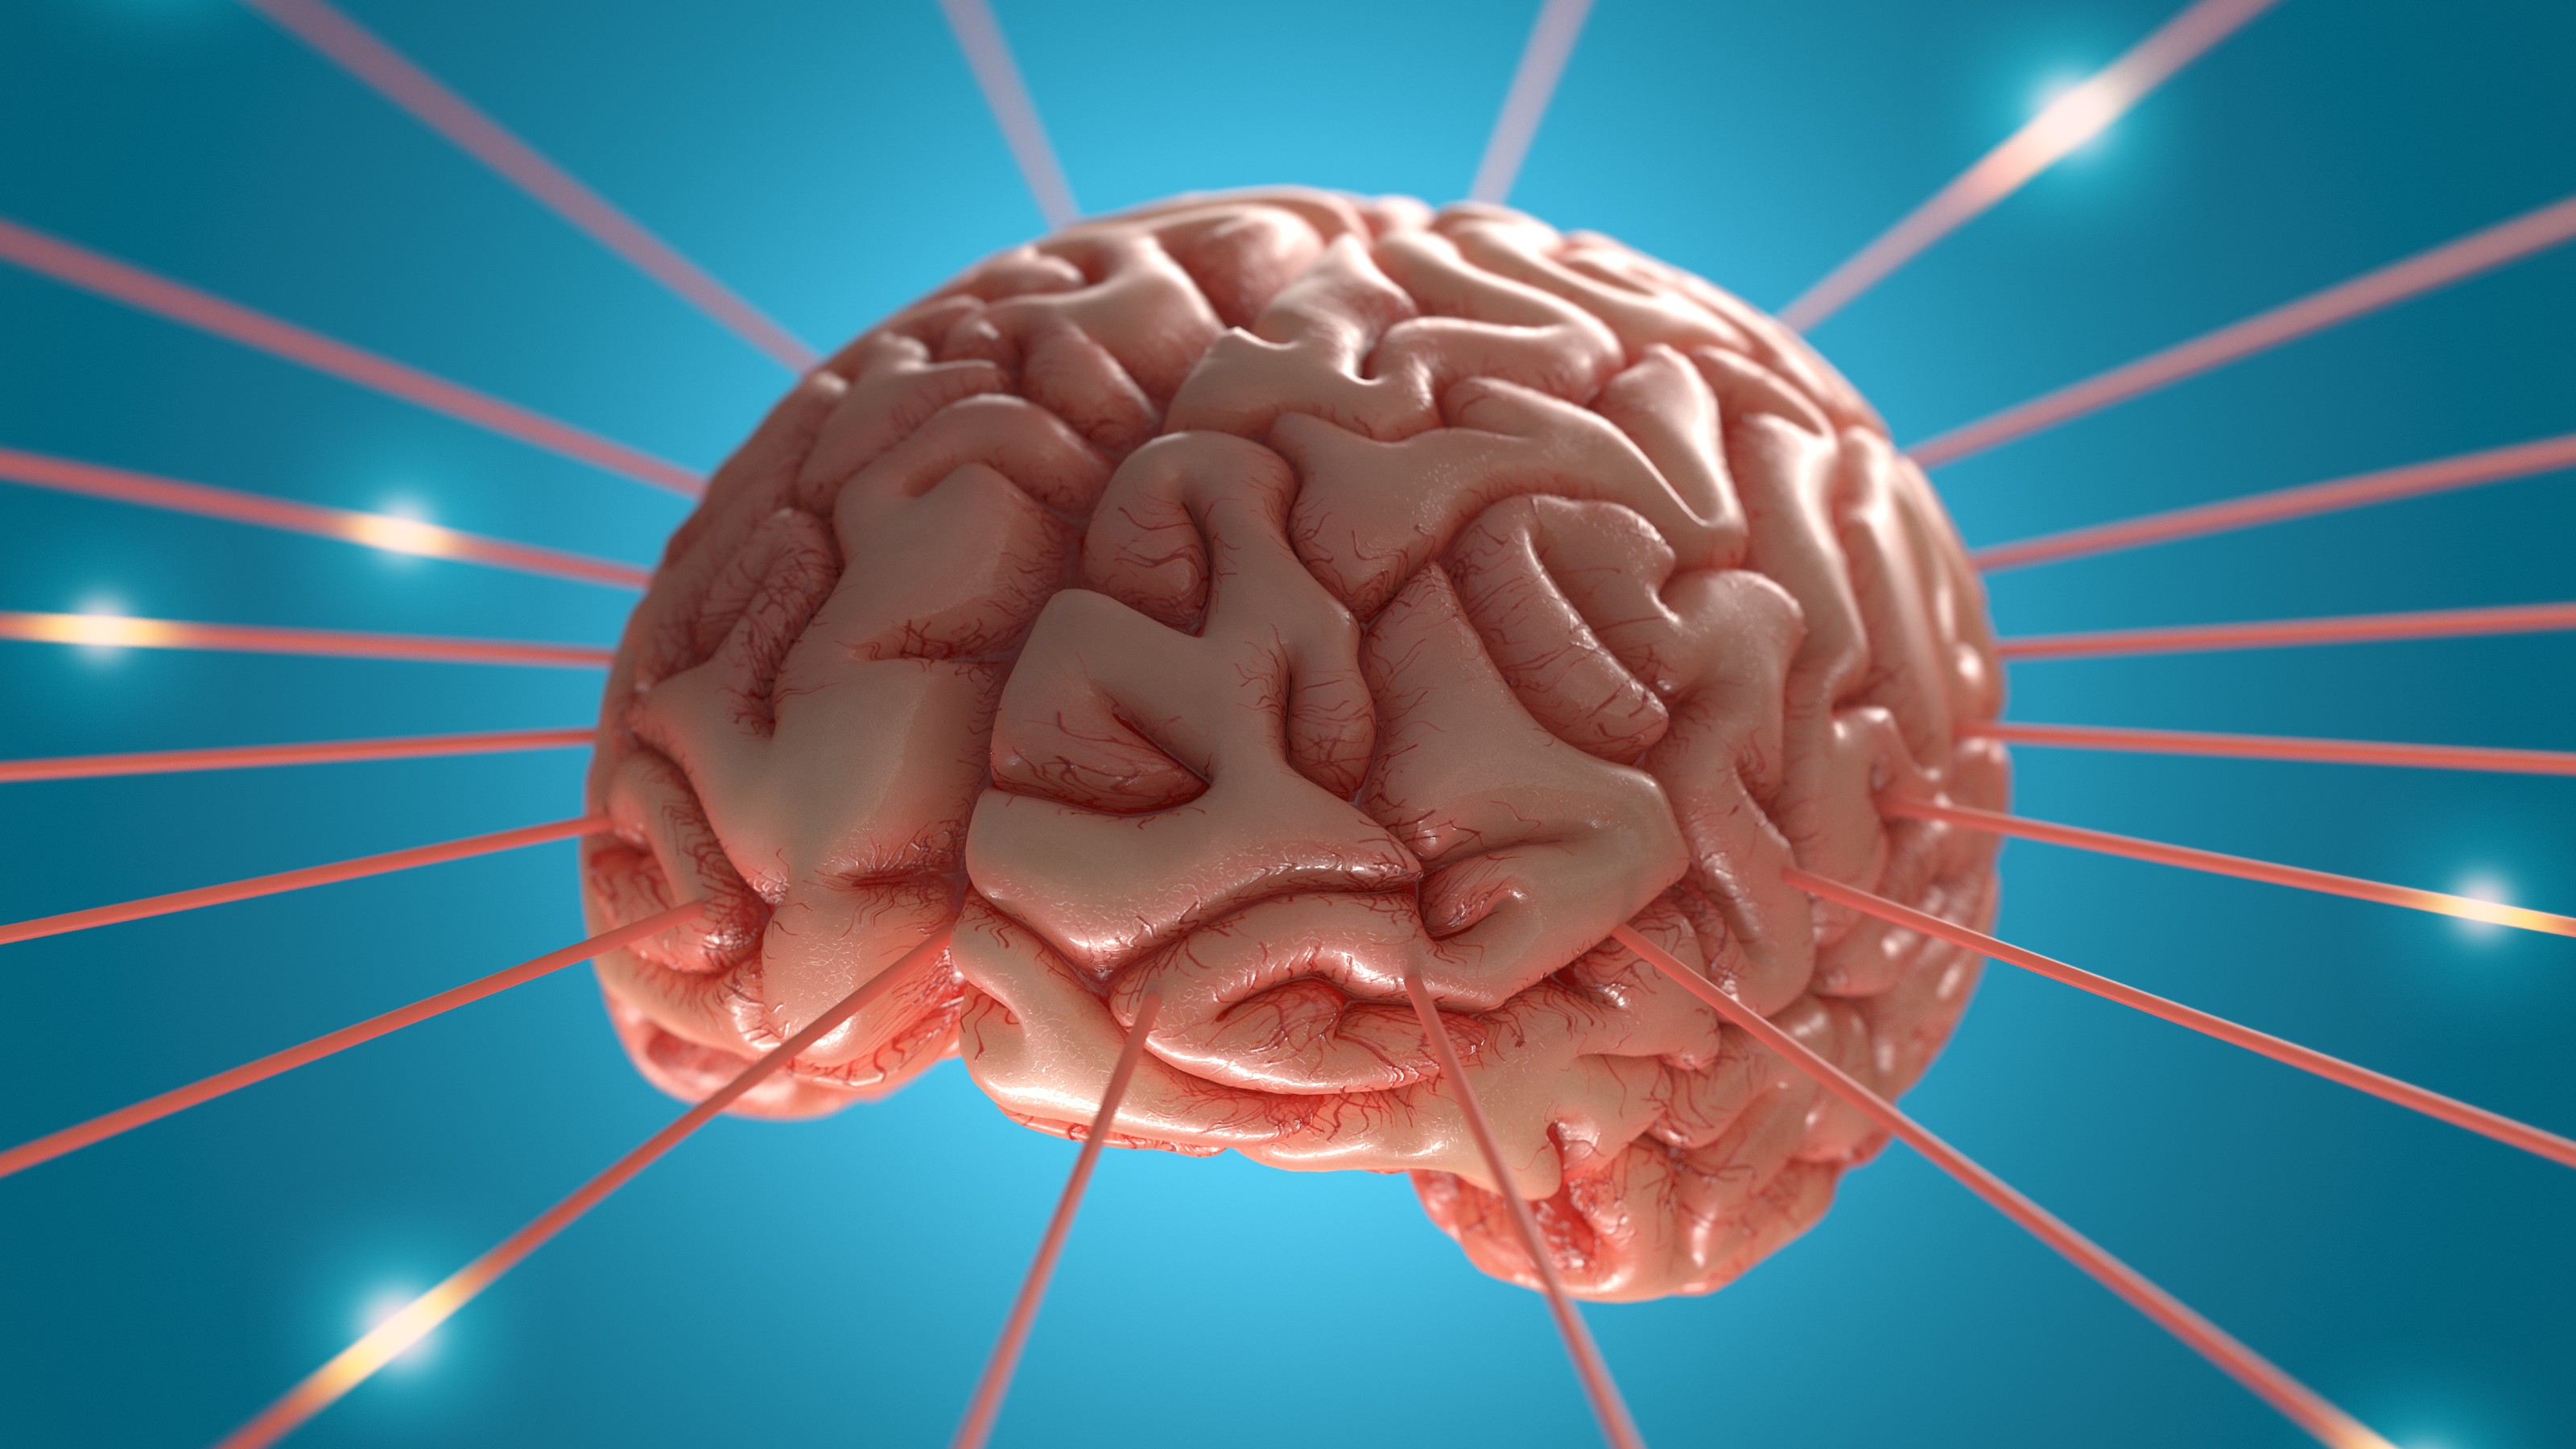 Large brain. Мозг энергия. Мозг похож на браузер. Коралл похожий на мозг. Рептильный мозг в психологии.